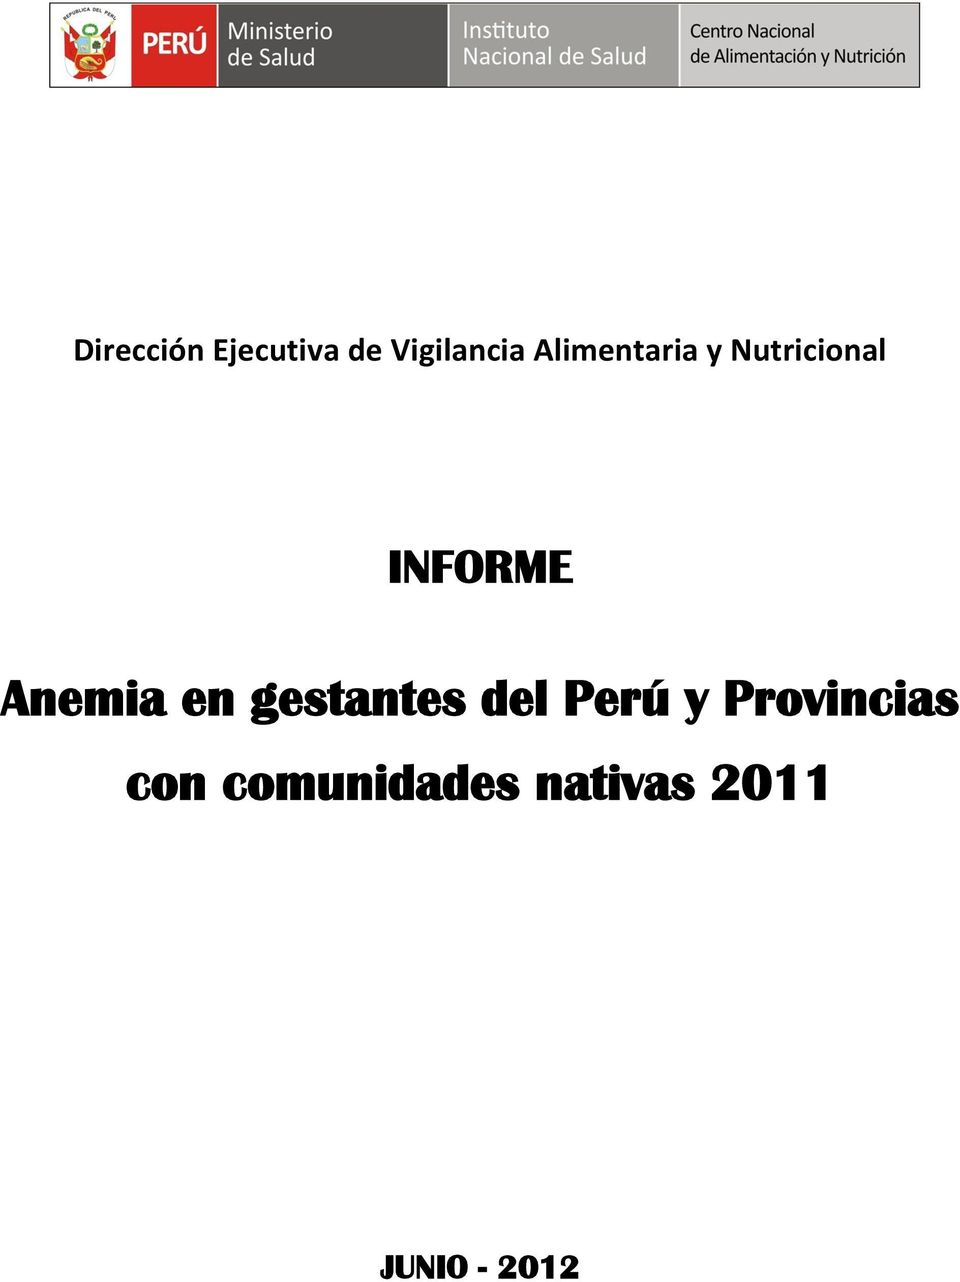 Anemia en gestantes del Perú y